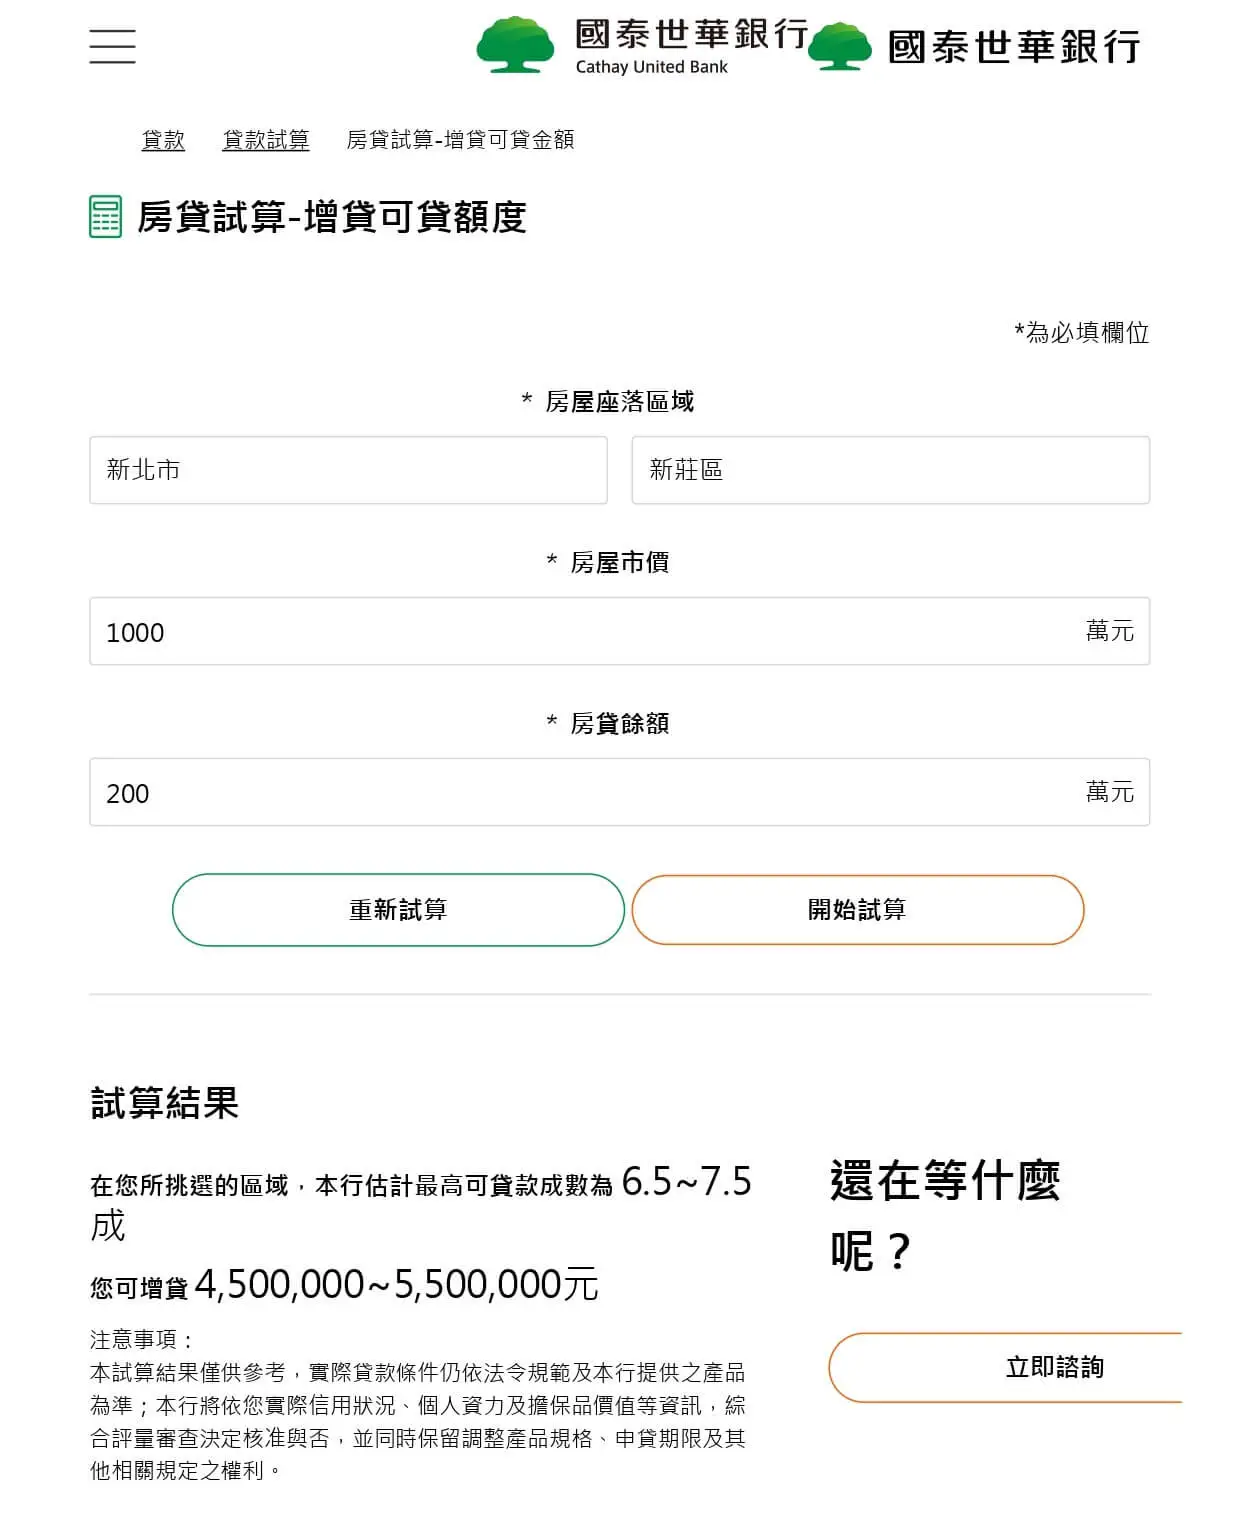 國泰世華銀行試算網站